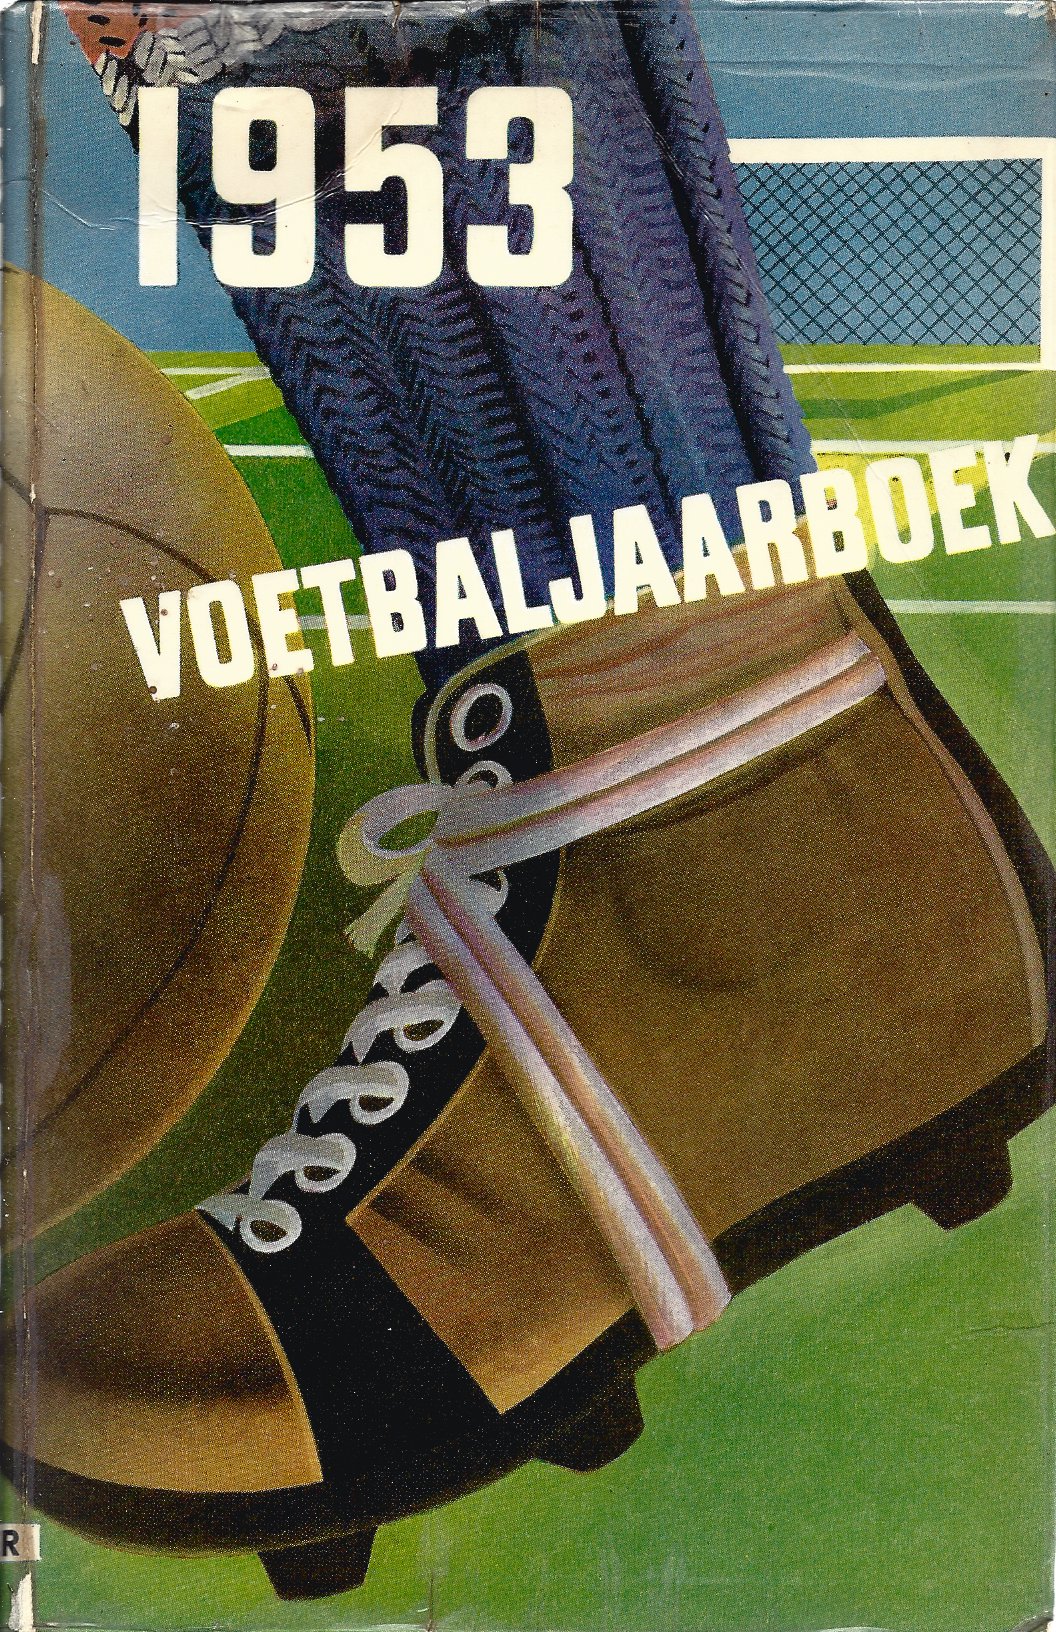 Pagano, Leo - Voetbaljaarboek 1953